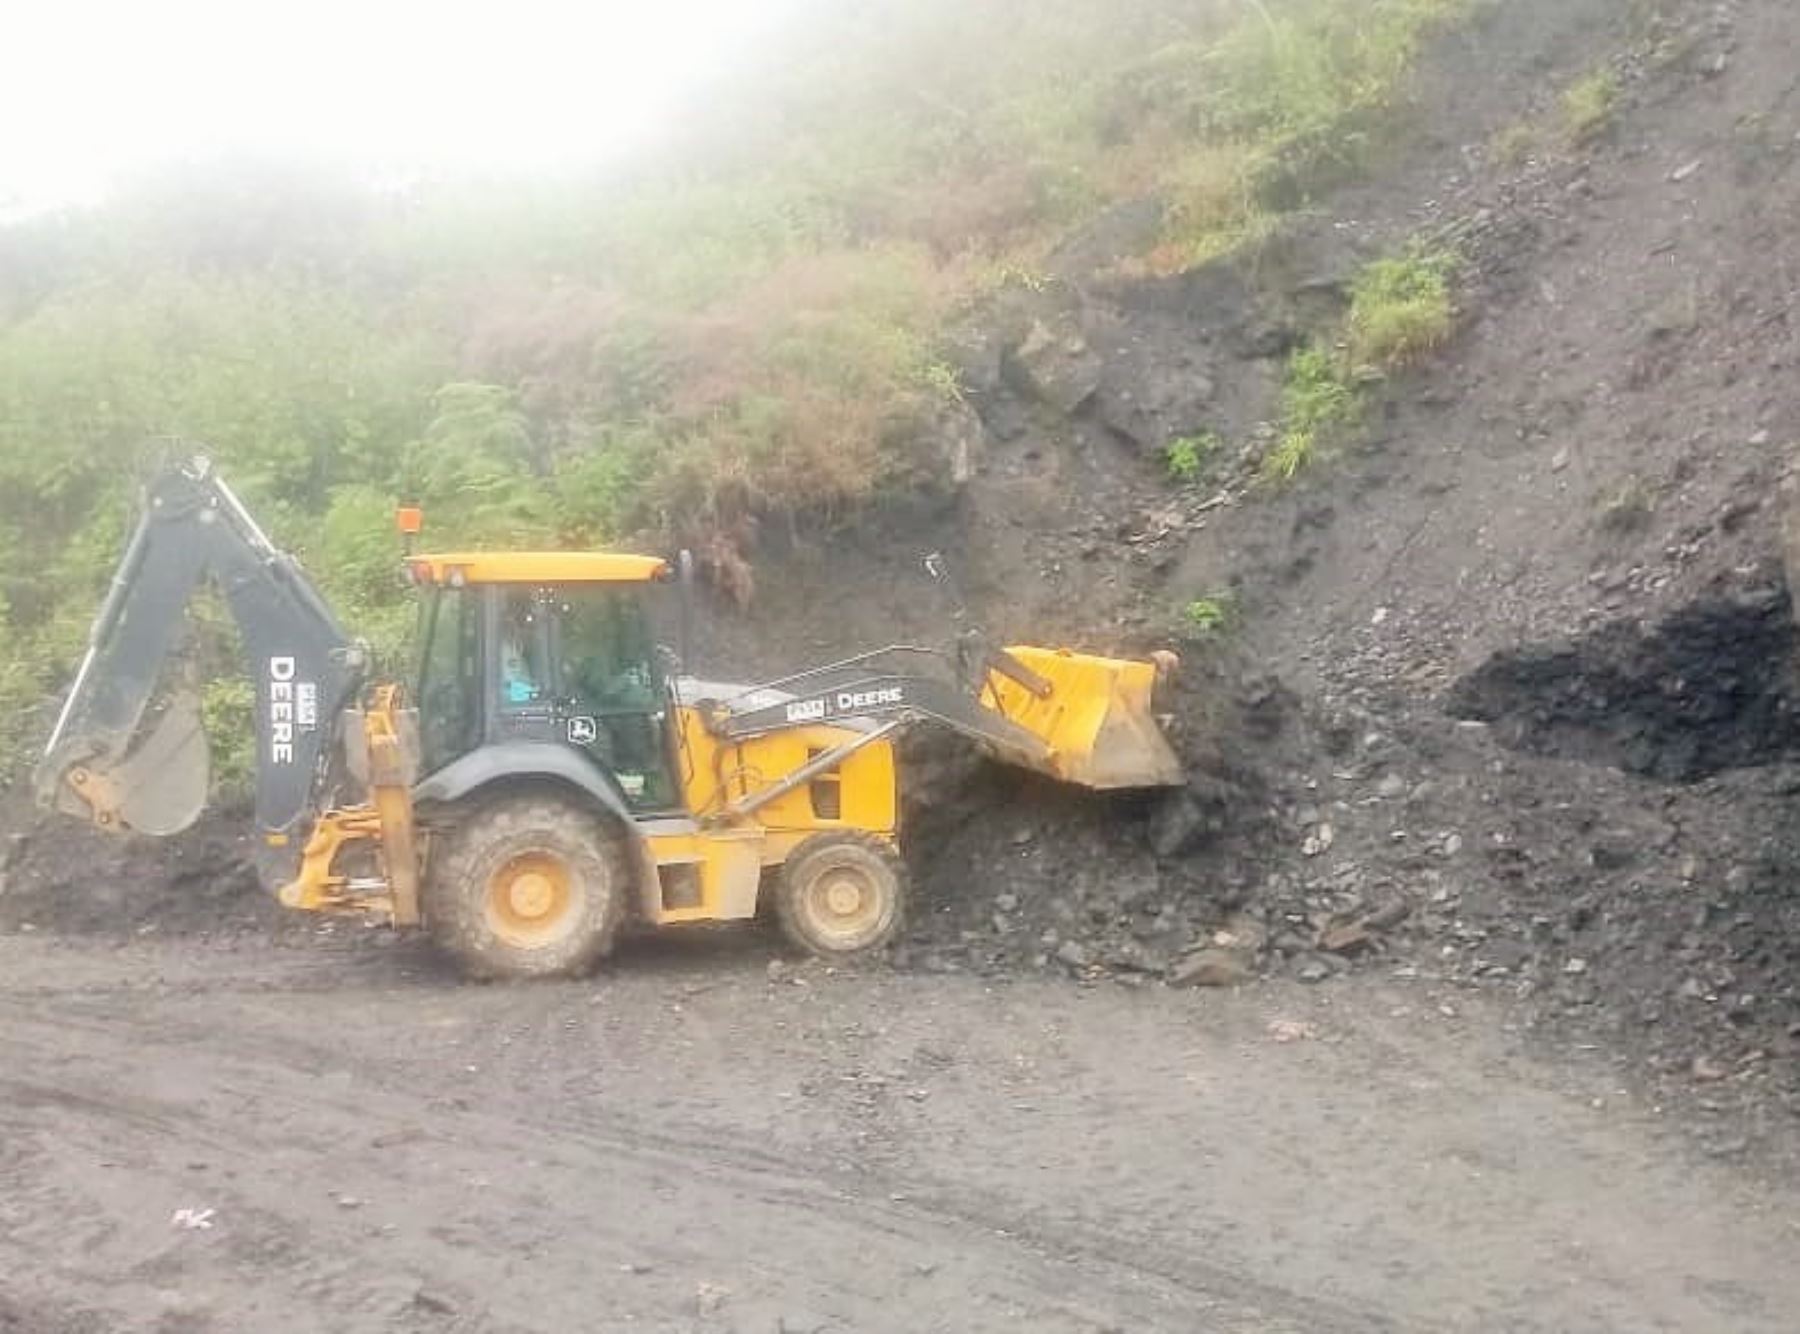 Con apoyo de maquinaria pesada buscan restablecer el tránsito en la vía bloqueada por derrumbes causados por lluvias en la región Amazonas. ANDINA/Difusión